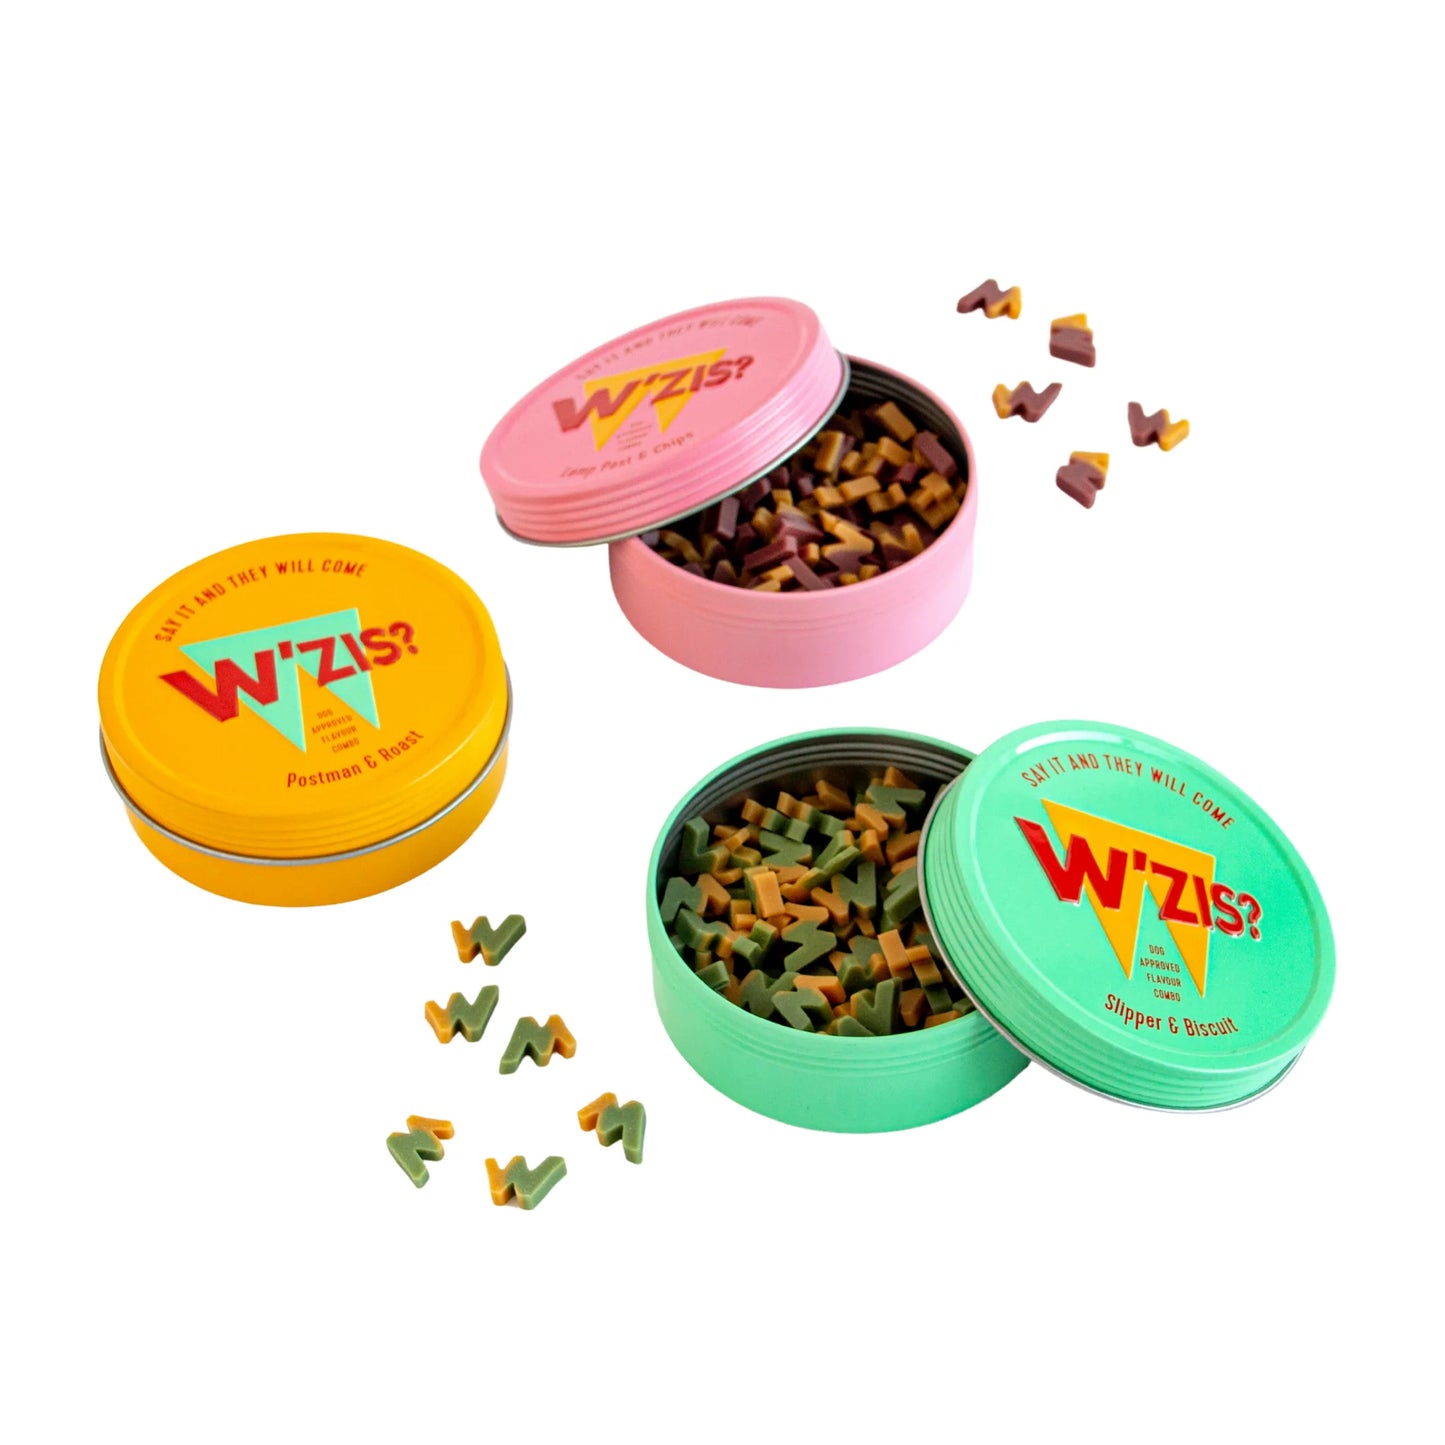 Wzis Dog Treat Tin (Yellow), Includes 100 Postman & Roast Treats (50g), Smoked Tomato, Sweet Potato & Pumpkin Flavour